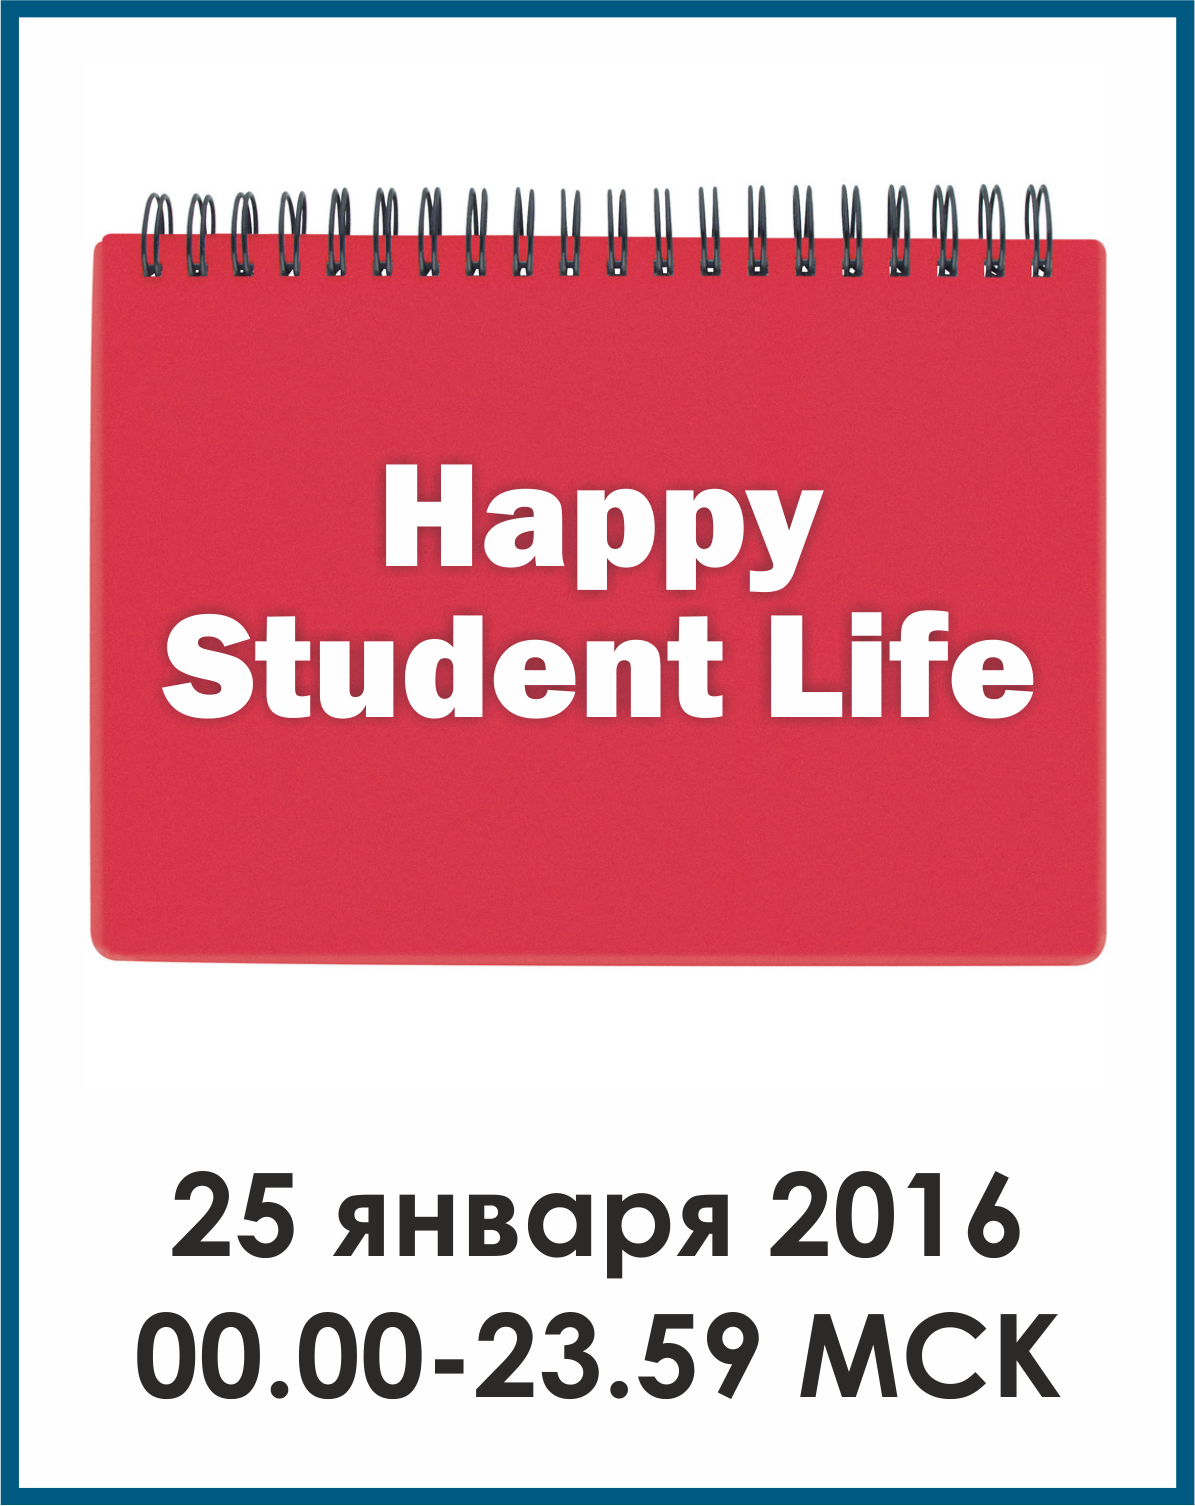 HAPPY STUDENT LIFE